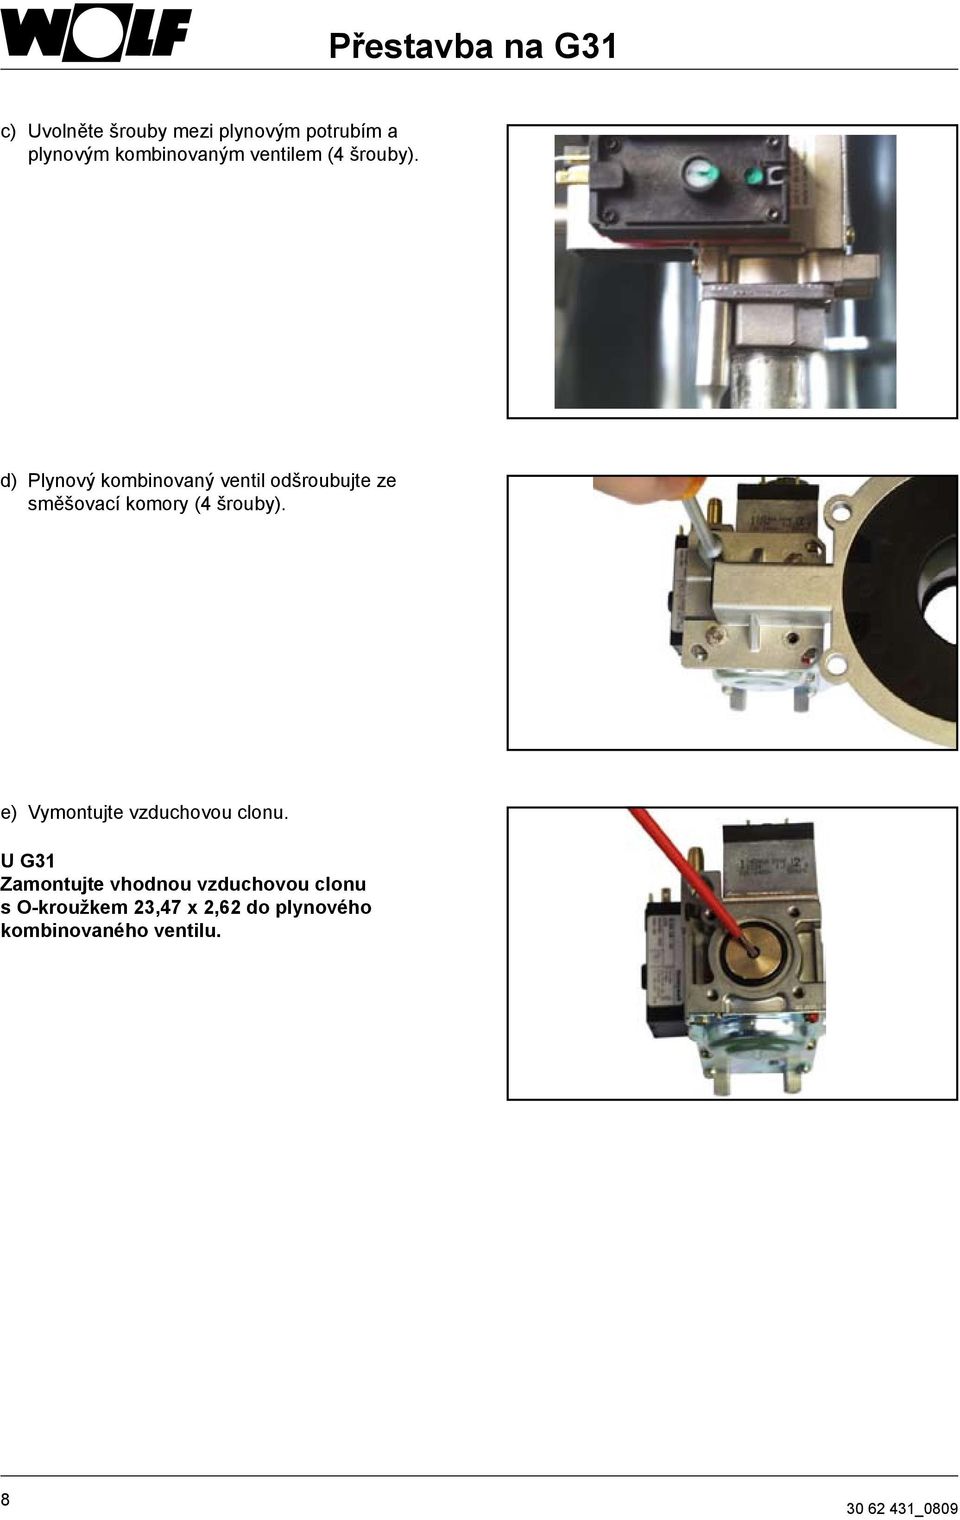 d) Plynový kombinovaný ventil odšroubujte ze směšovací komory (4 šrouby).